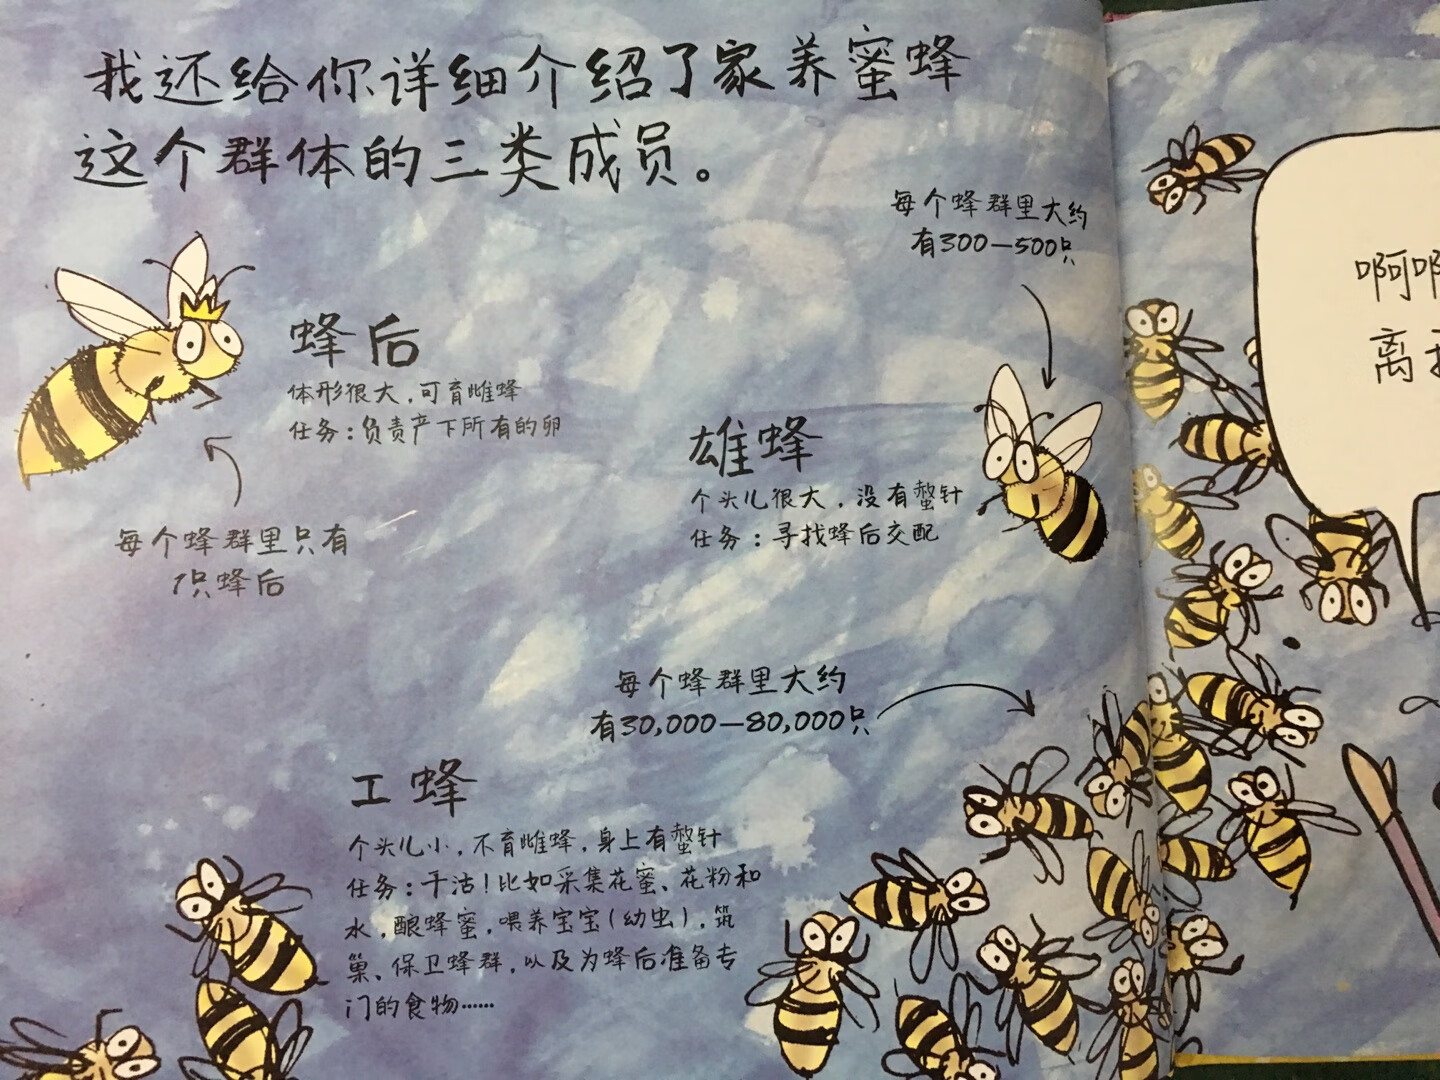 读完才来评价，超级好的一个绘本，教小孩认识了蜜蜂的种类，故事幽默有趣，配图精美，生动形象，小孩子特别喜欢，第一次真正认识和了解到蜜蜂，也明白了蜜蜂虽然会蜇人，我们缺离不开它